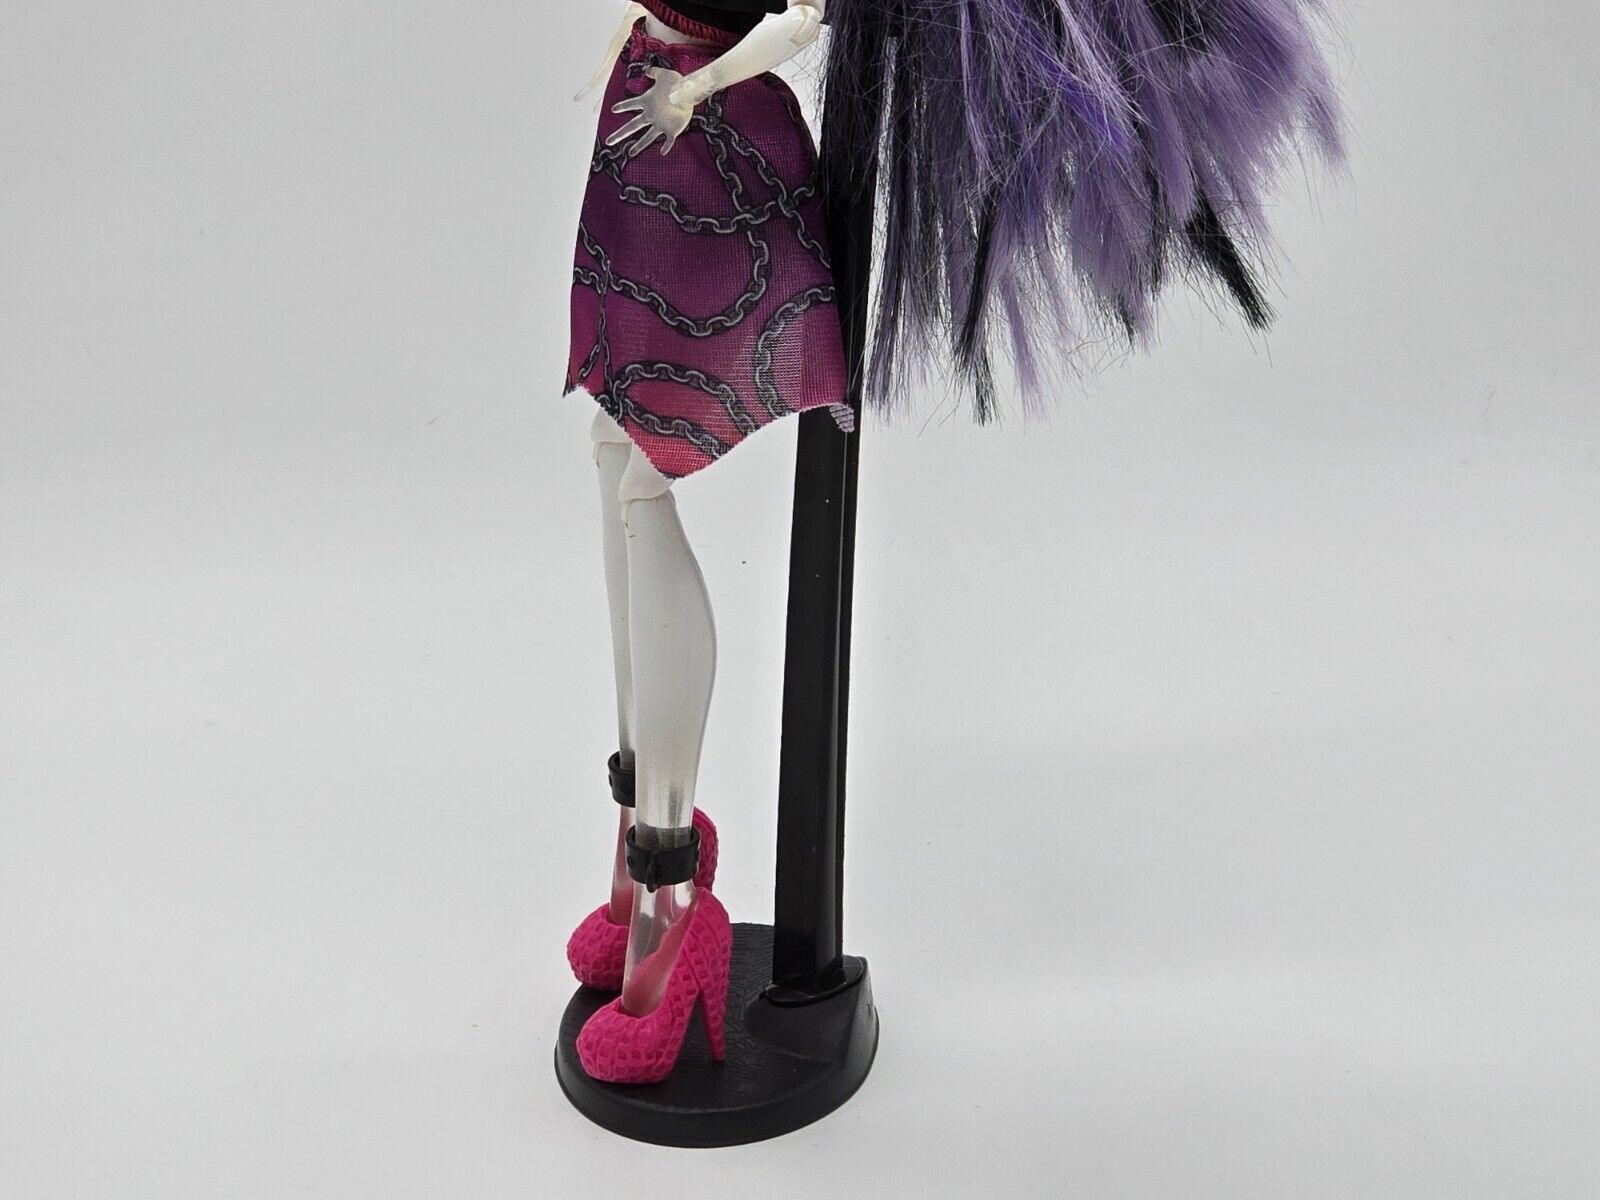 Monster High Spectra Vondergeist "GHOUL SPIRIT" Doll Daughter Ghost 